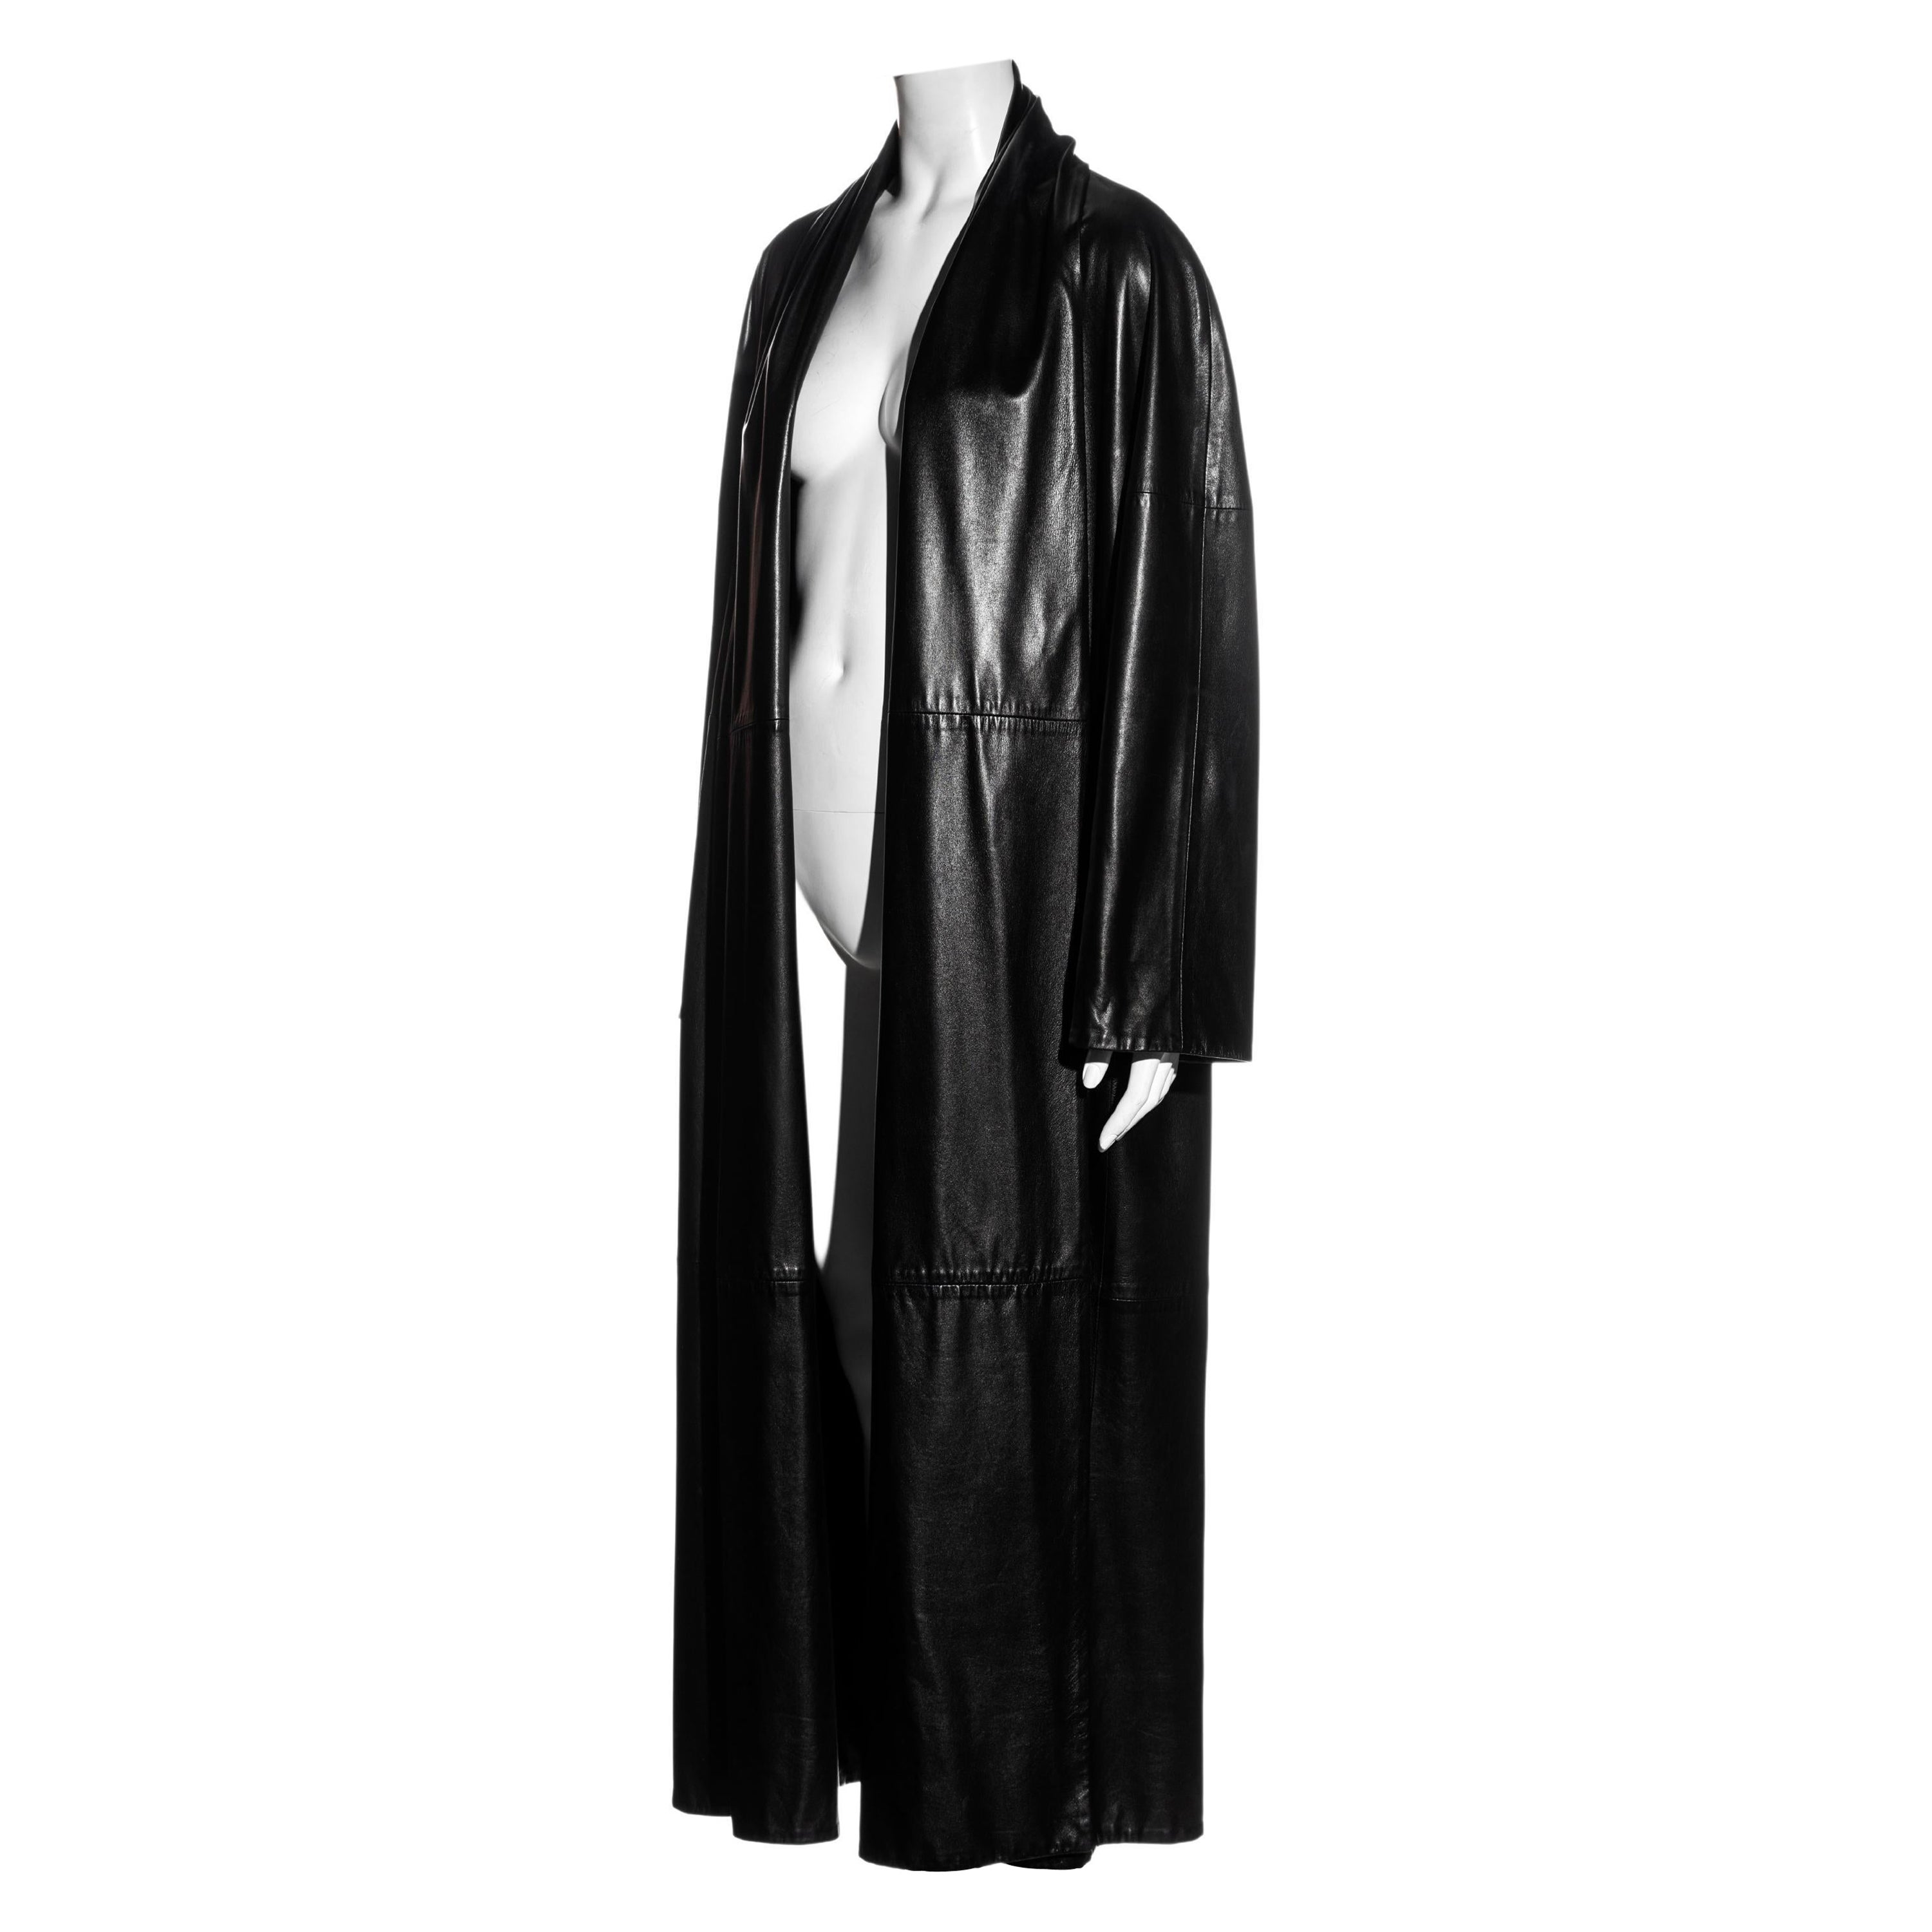 Hermes by Martin Margiela black lambskin leather full-length coat, fw 1999